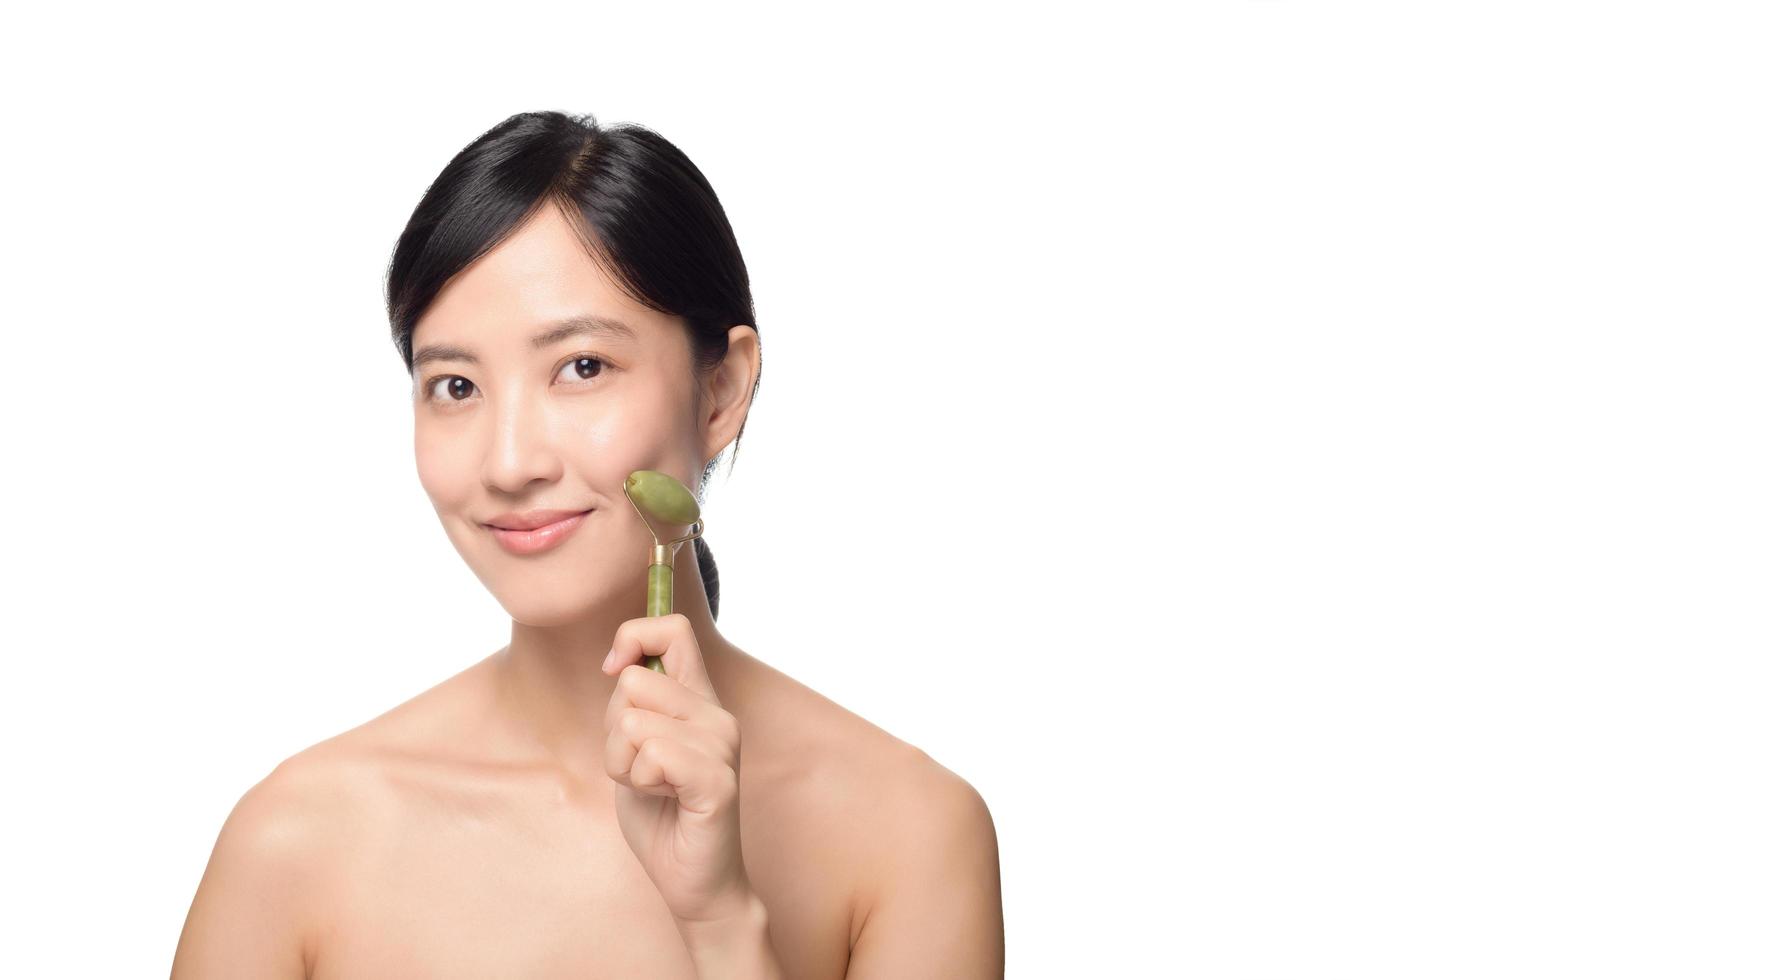 prise de vue en studio d'une jeune femme asiatique séduisante utilisant un rouleau de jade sur son visage sur un fond blanc. photo